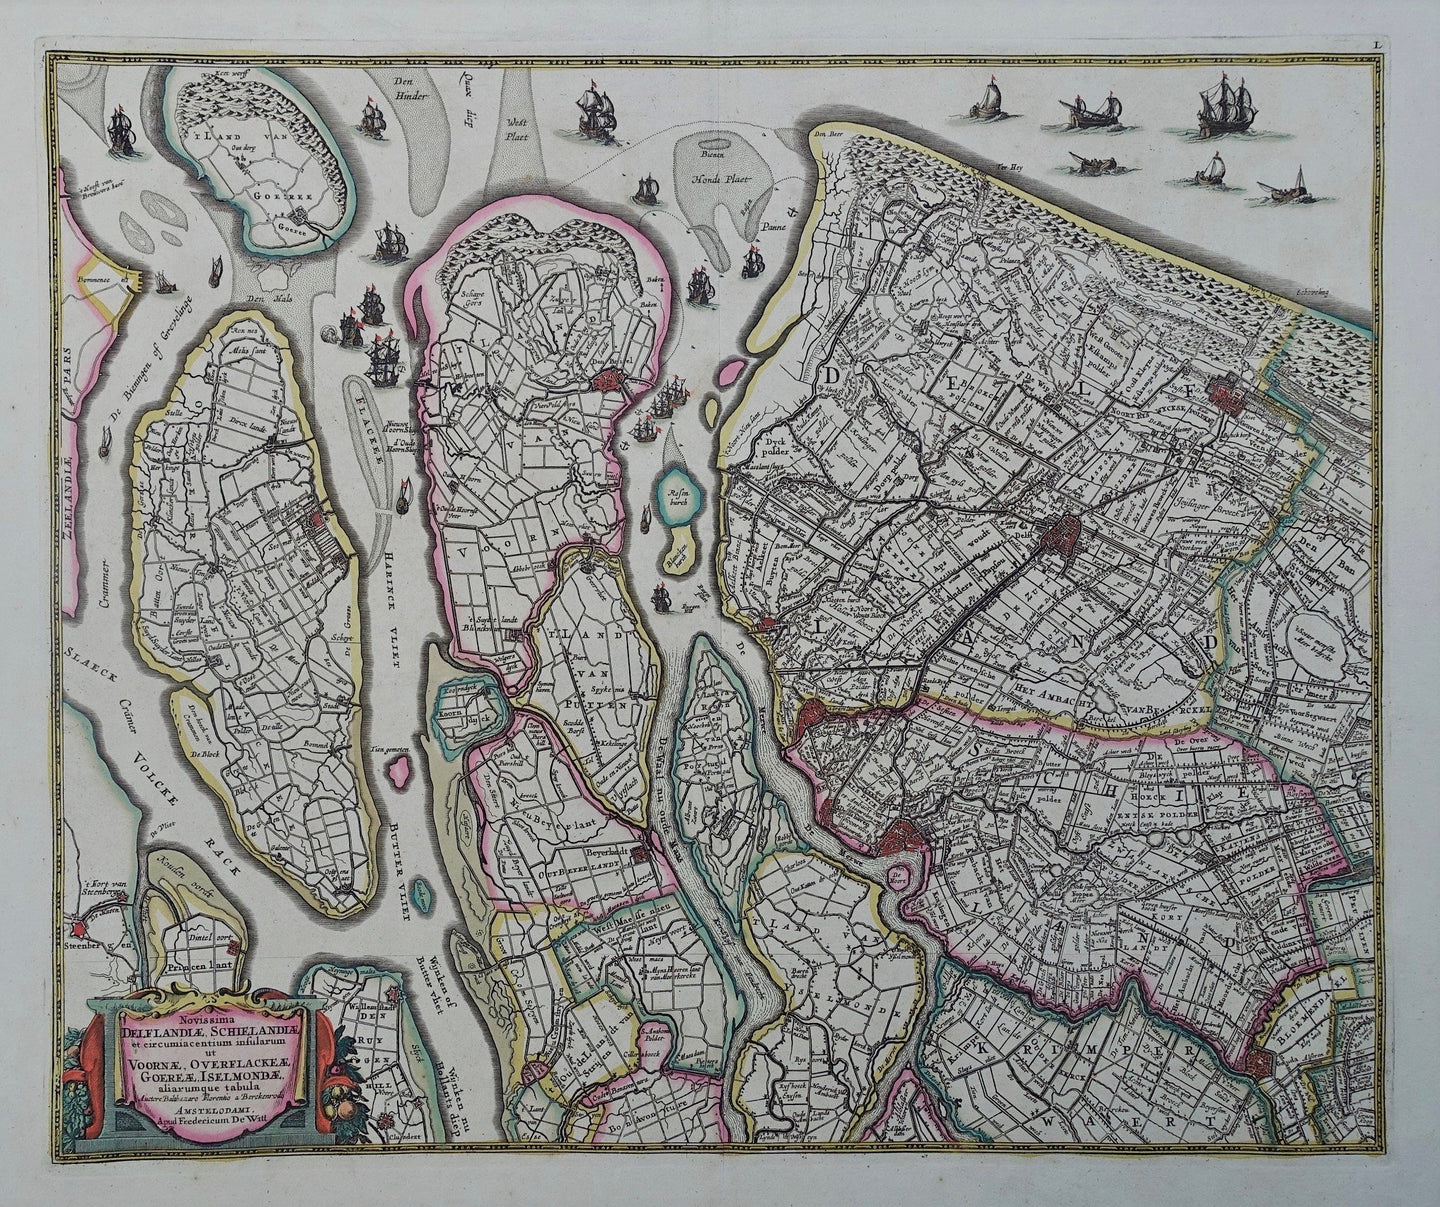 Delfland Schieland en Zuid-Hollandse eilanden - Frederick de Wit - ca 1684